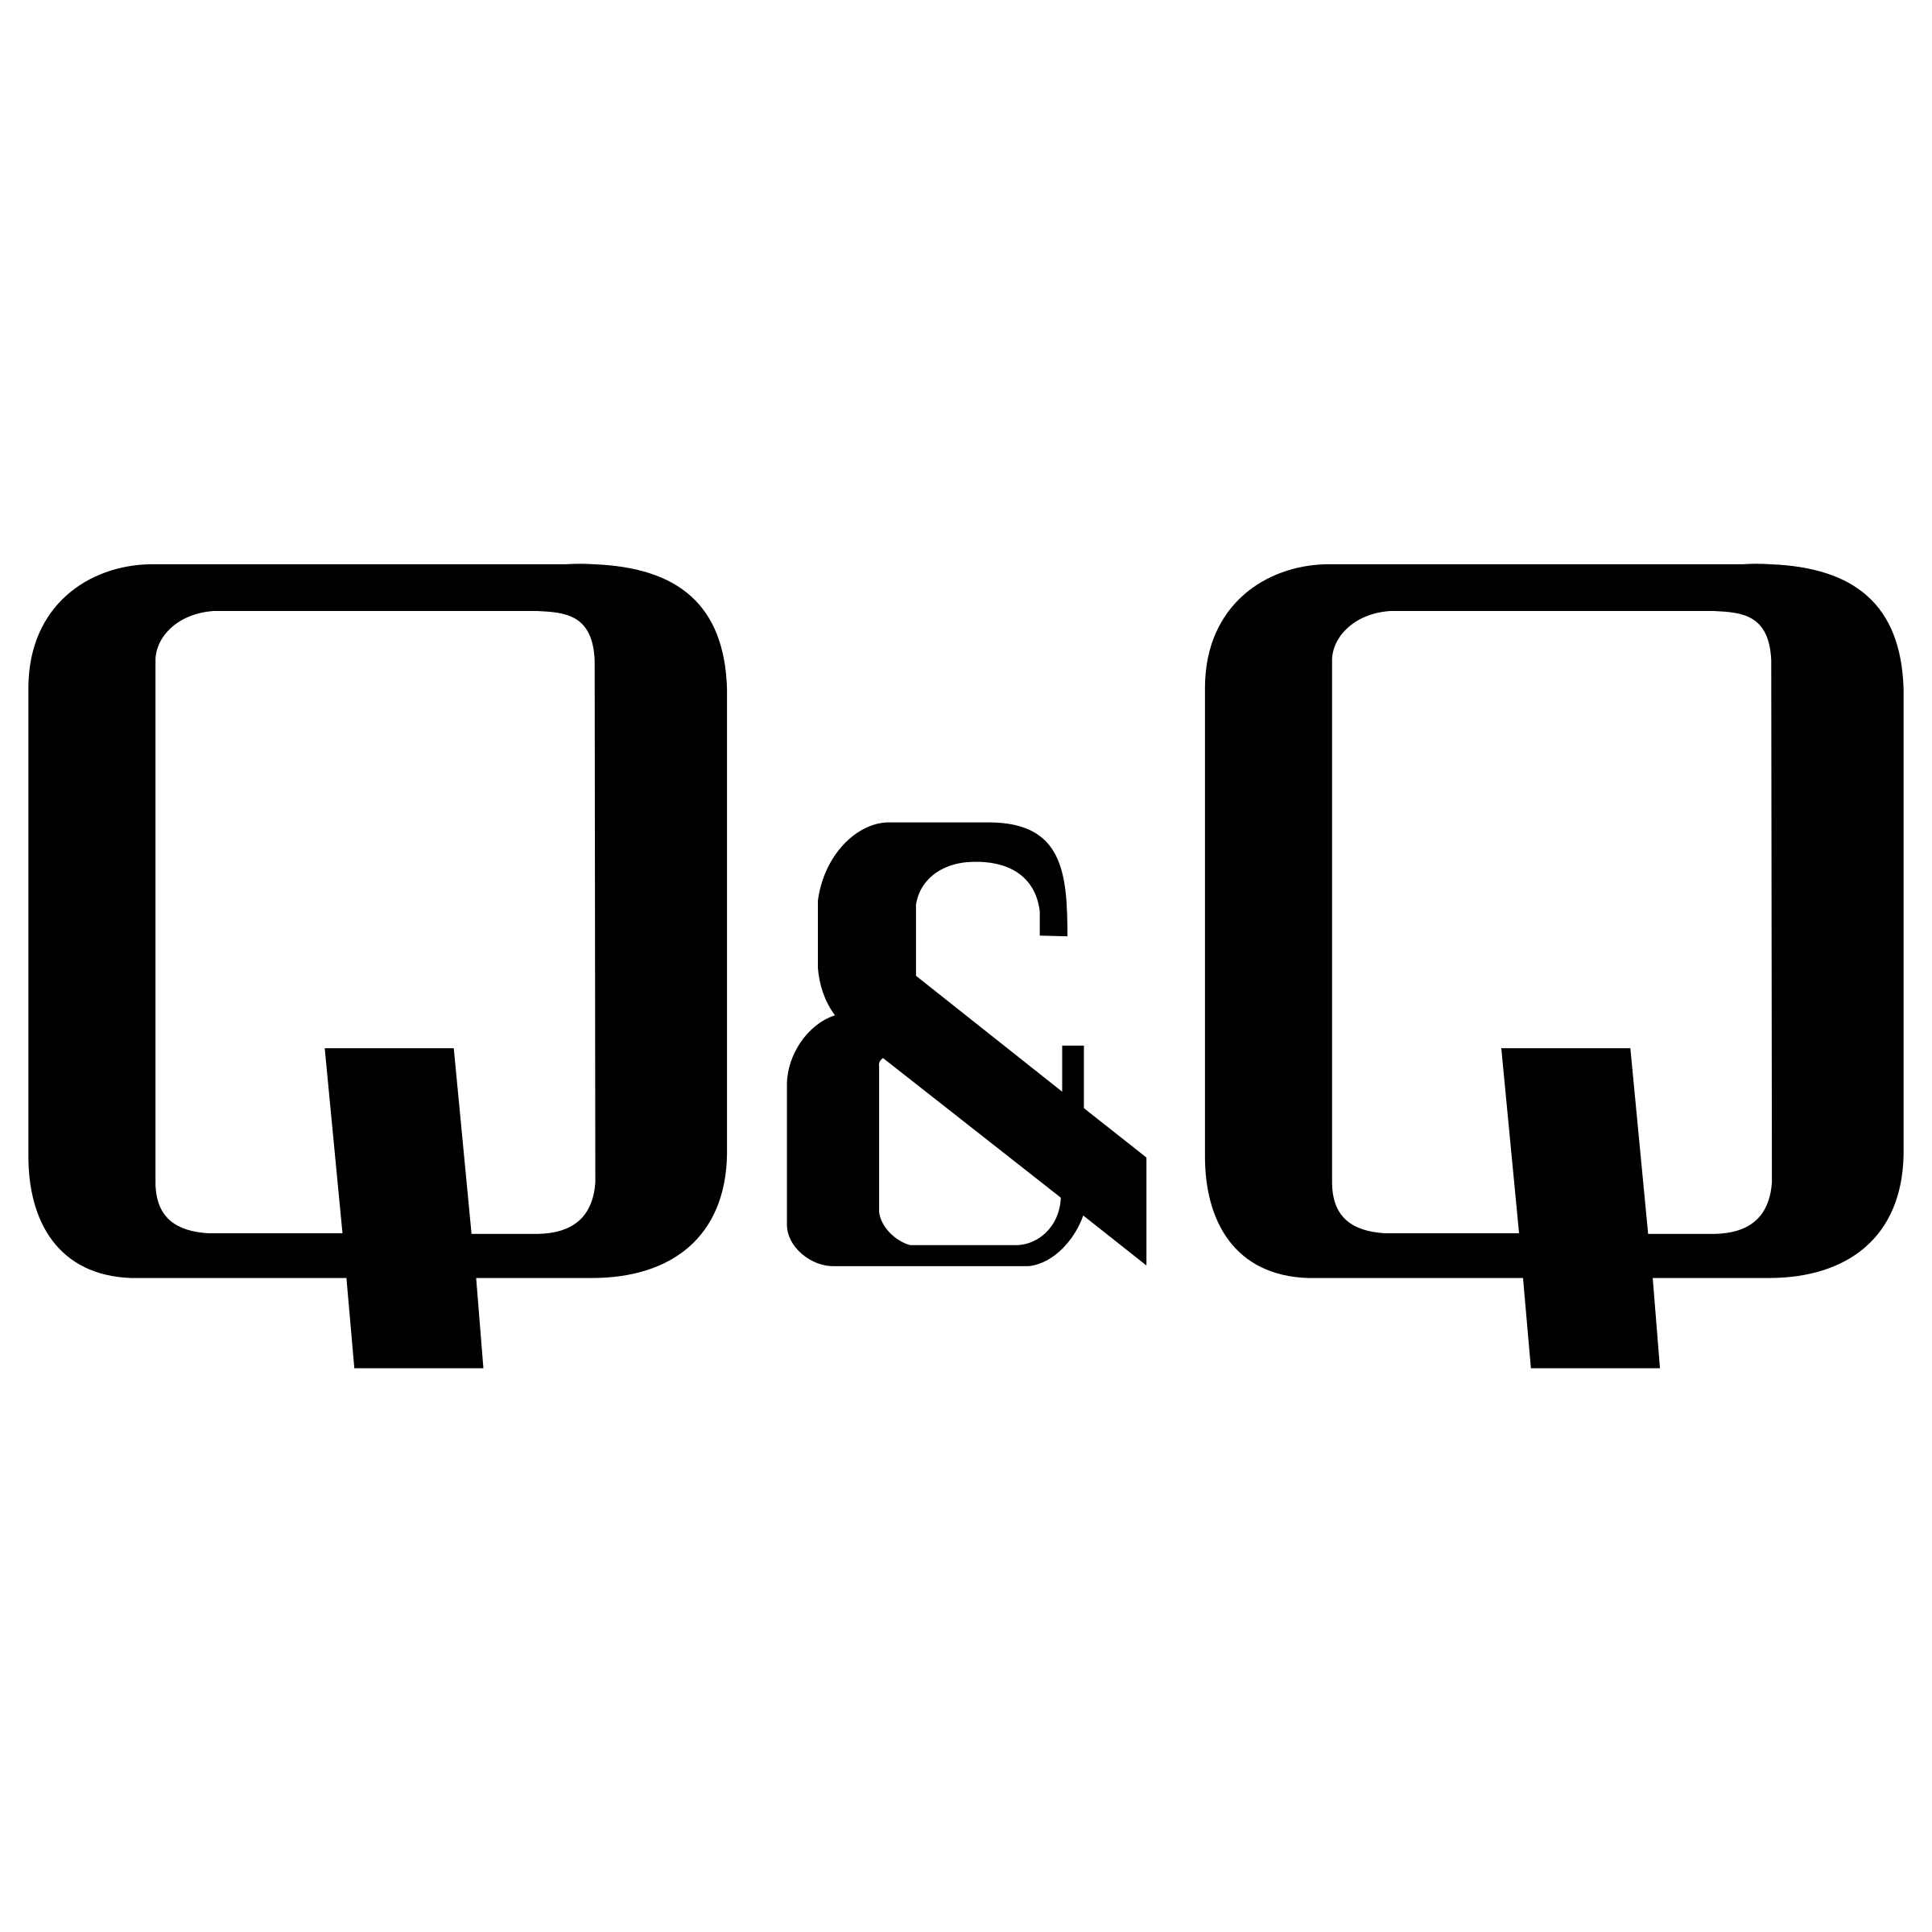 Black Q Logo - Q&Q Logo PNG Transparent & SVG Vector - Freebie Supply